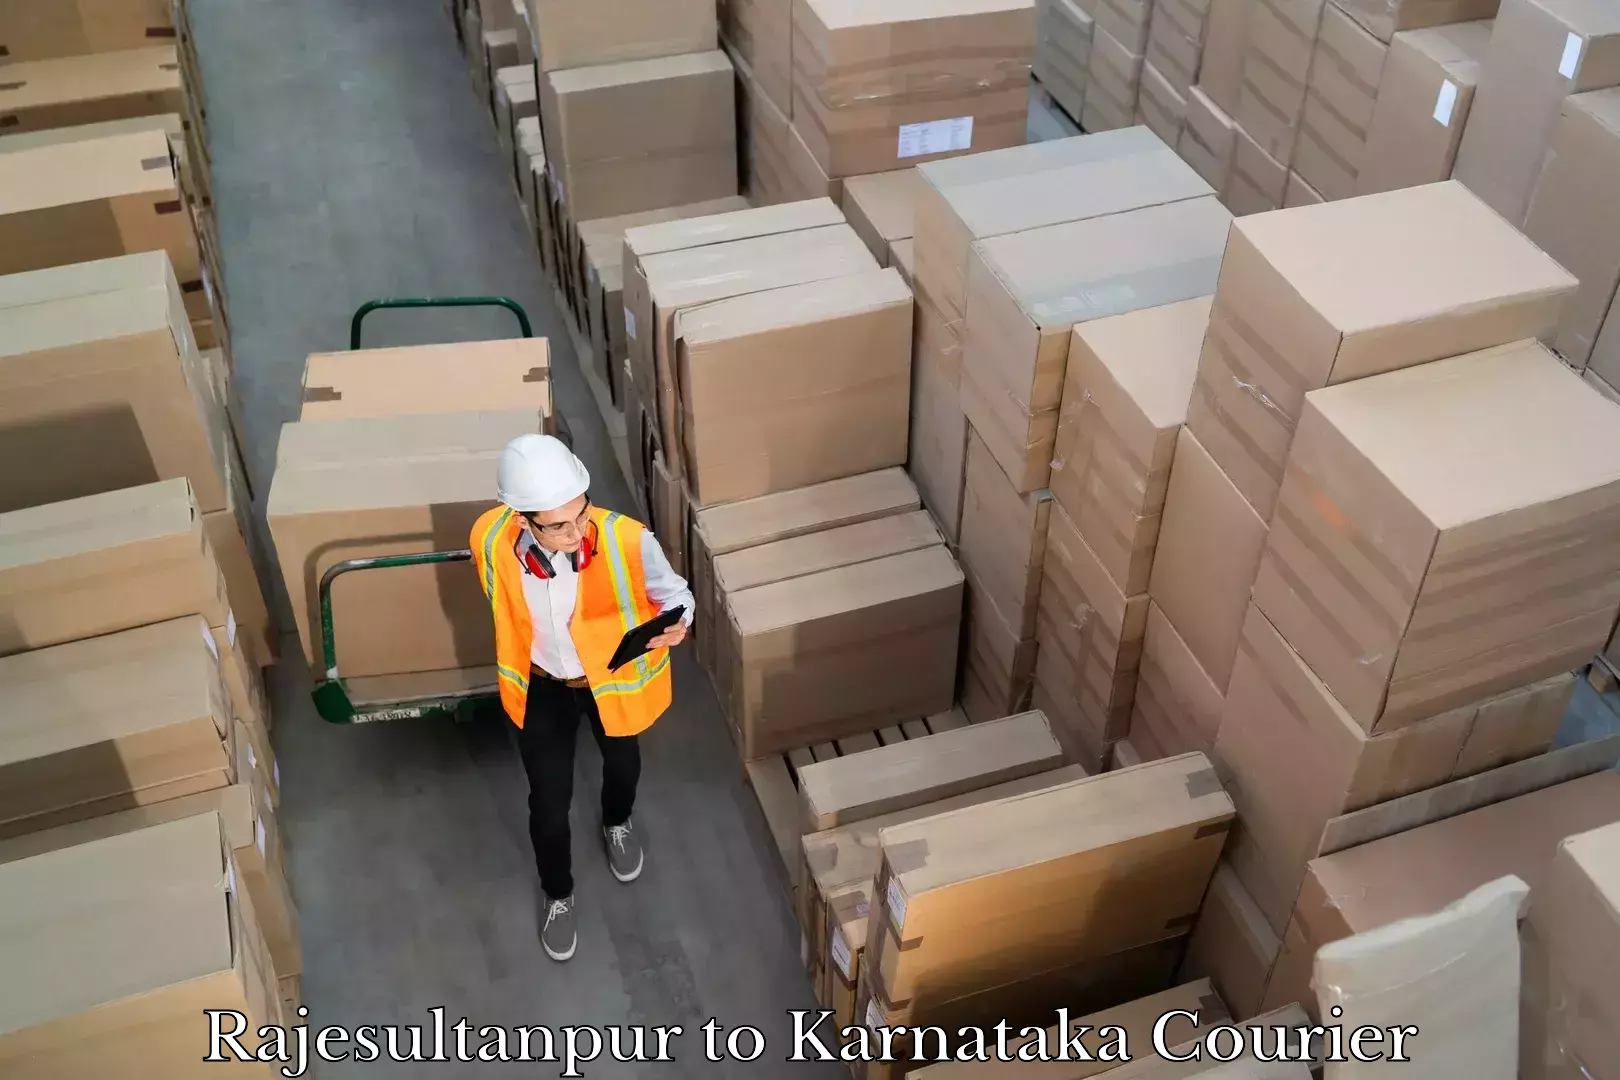 Affordable parcel service Rajesultanpur to Karnataka